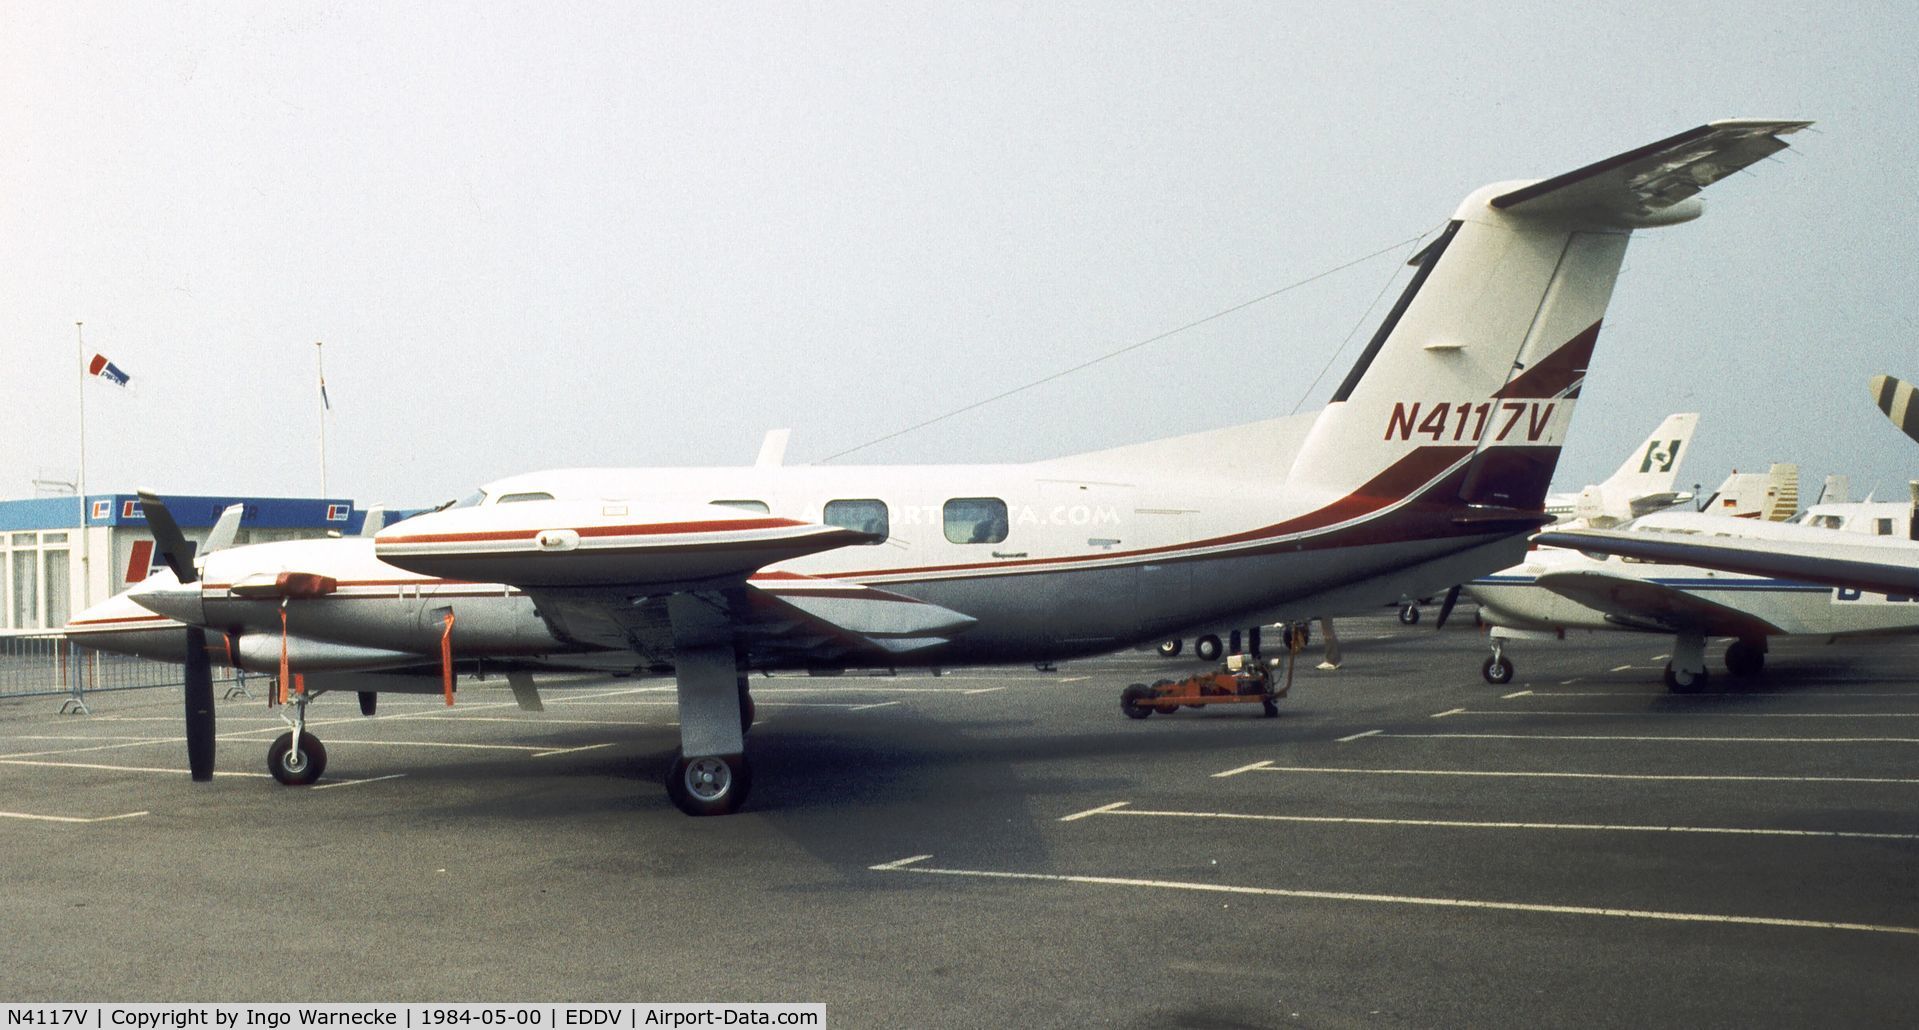 N4117V, 1984 Piper PA-42-720 Cheyenne IIIA C/N 42-5501018, Piper PA-41-720 Cheyenne IIIA at the ILA 1984, Hannover